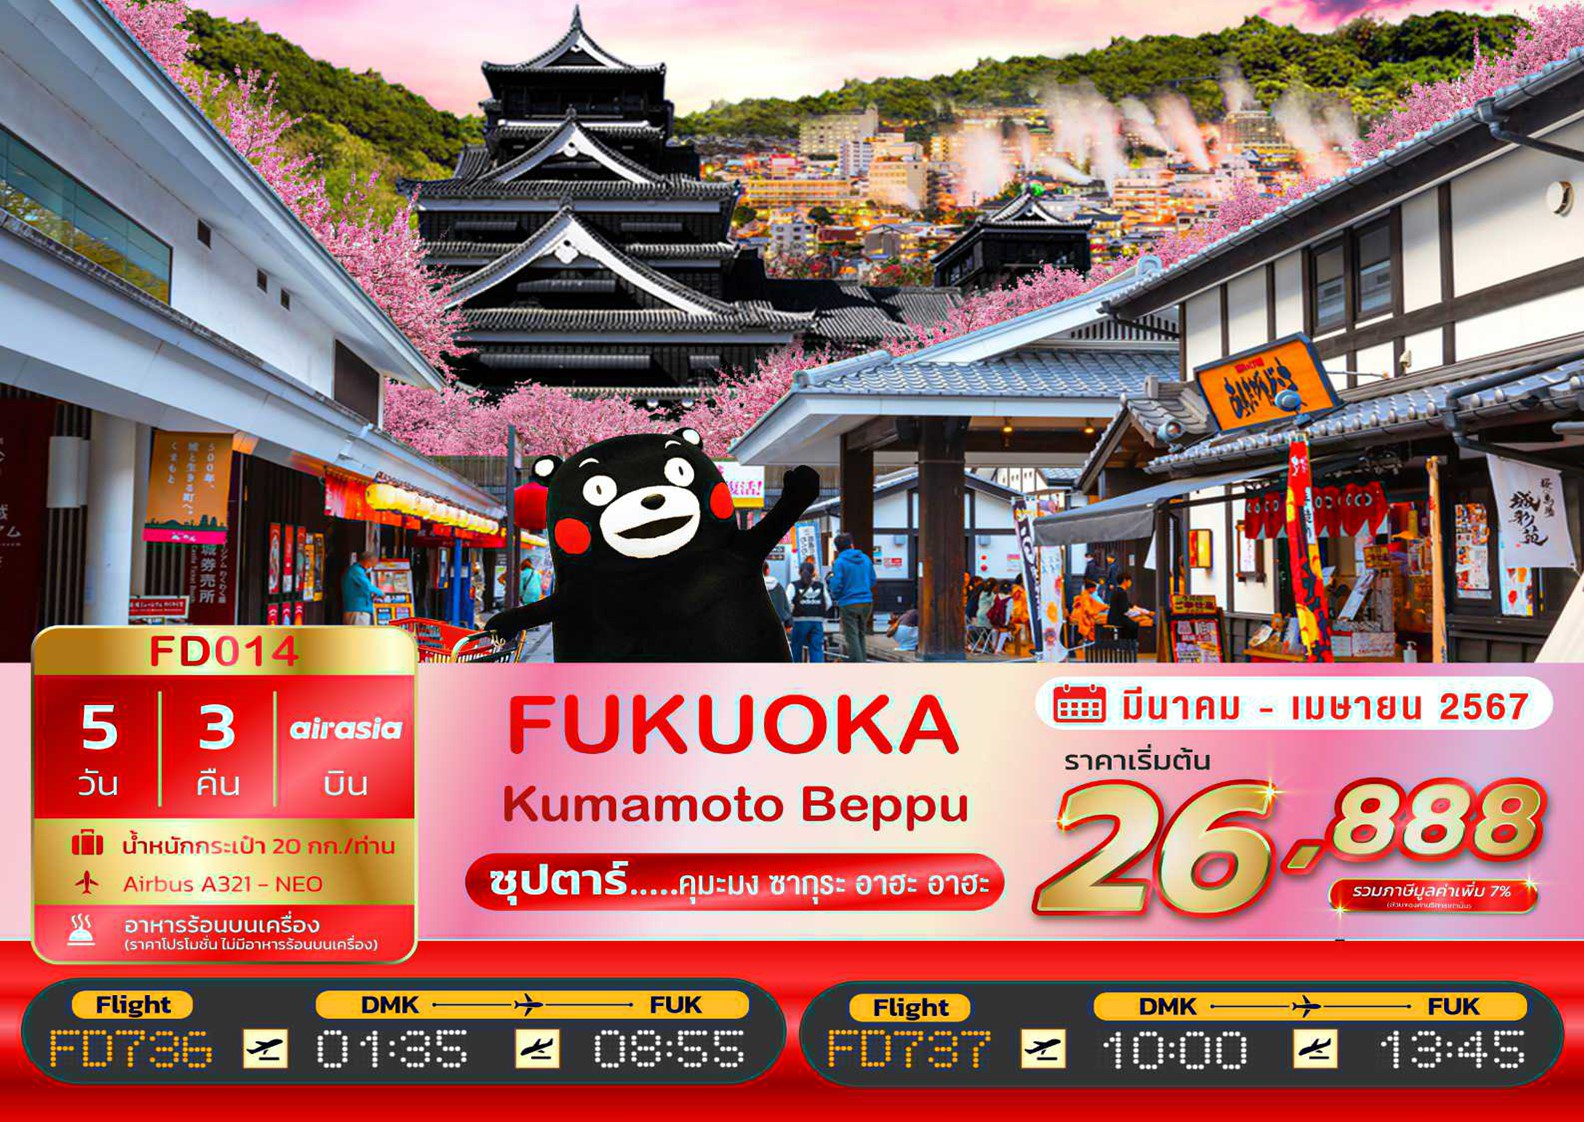 ทัวร์ญี่ปุ่น FUKUOKA KUMAMOTO BEPPU ซุปตาร์...คุมะมง ซากุระ อาฮะ อาฮะ 5 วัน 3 คืน